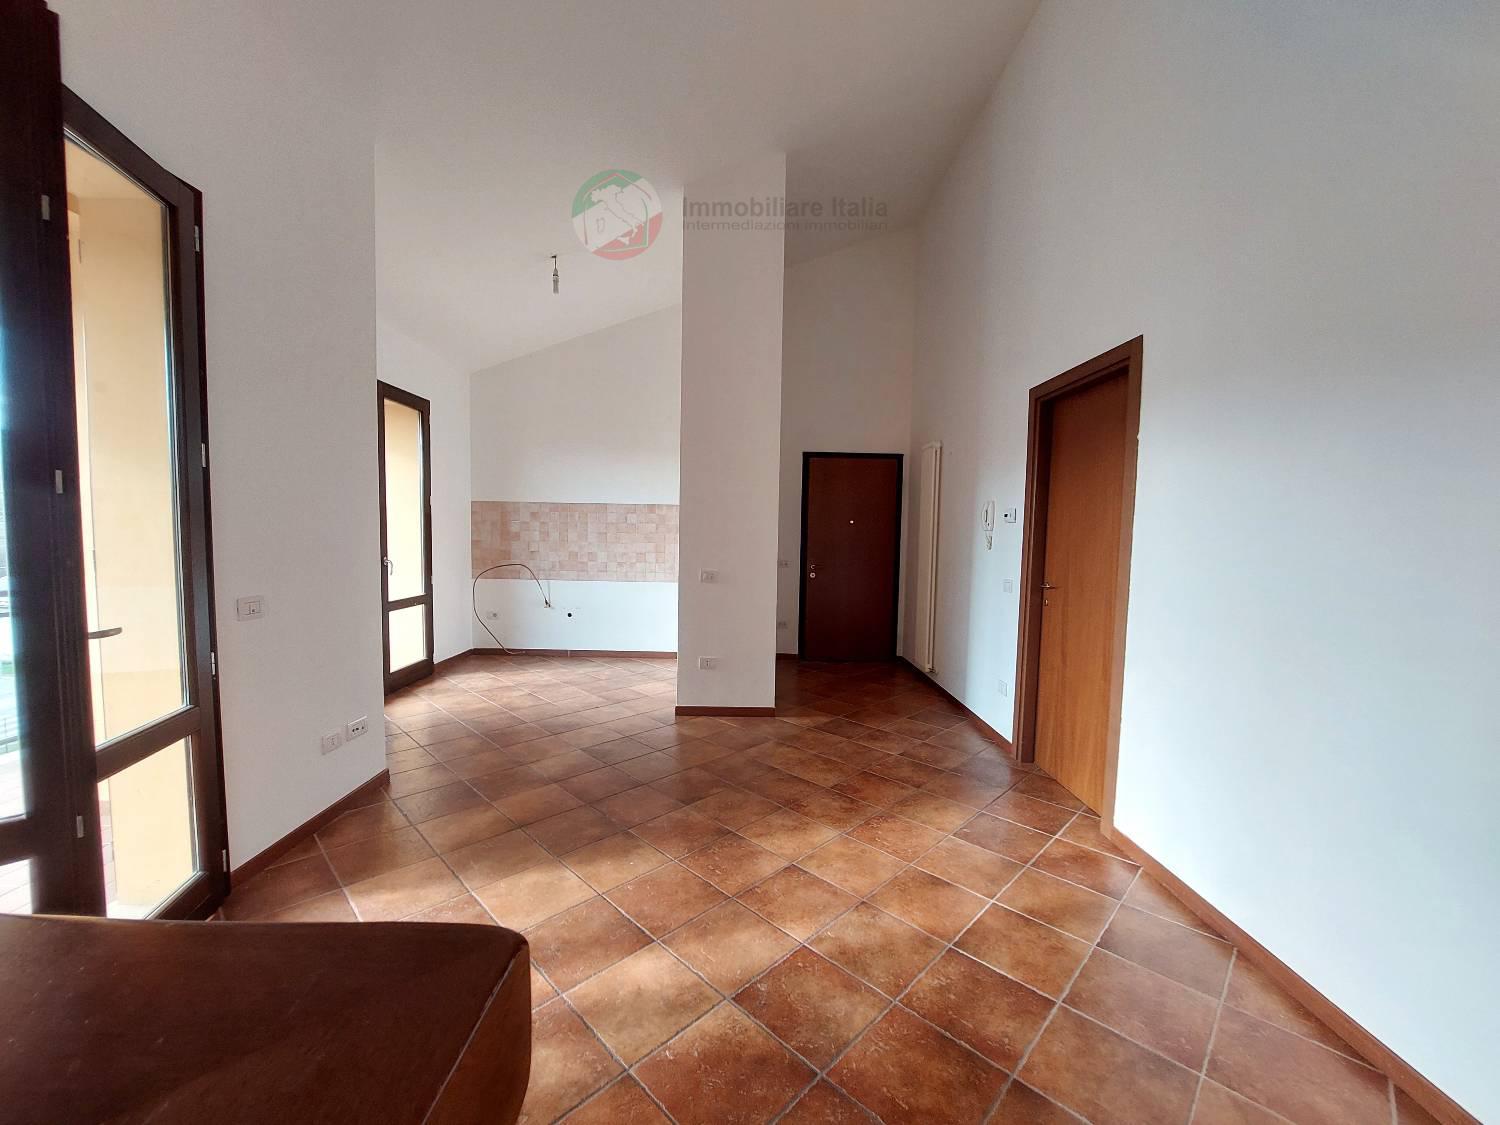 Appartamento in vendita a Tavullia, 3 locali, zona glione, prezzo € 135.000 | PortaleAgenzieImmobiliari.it